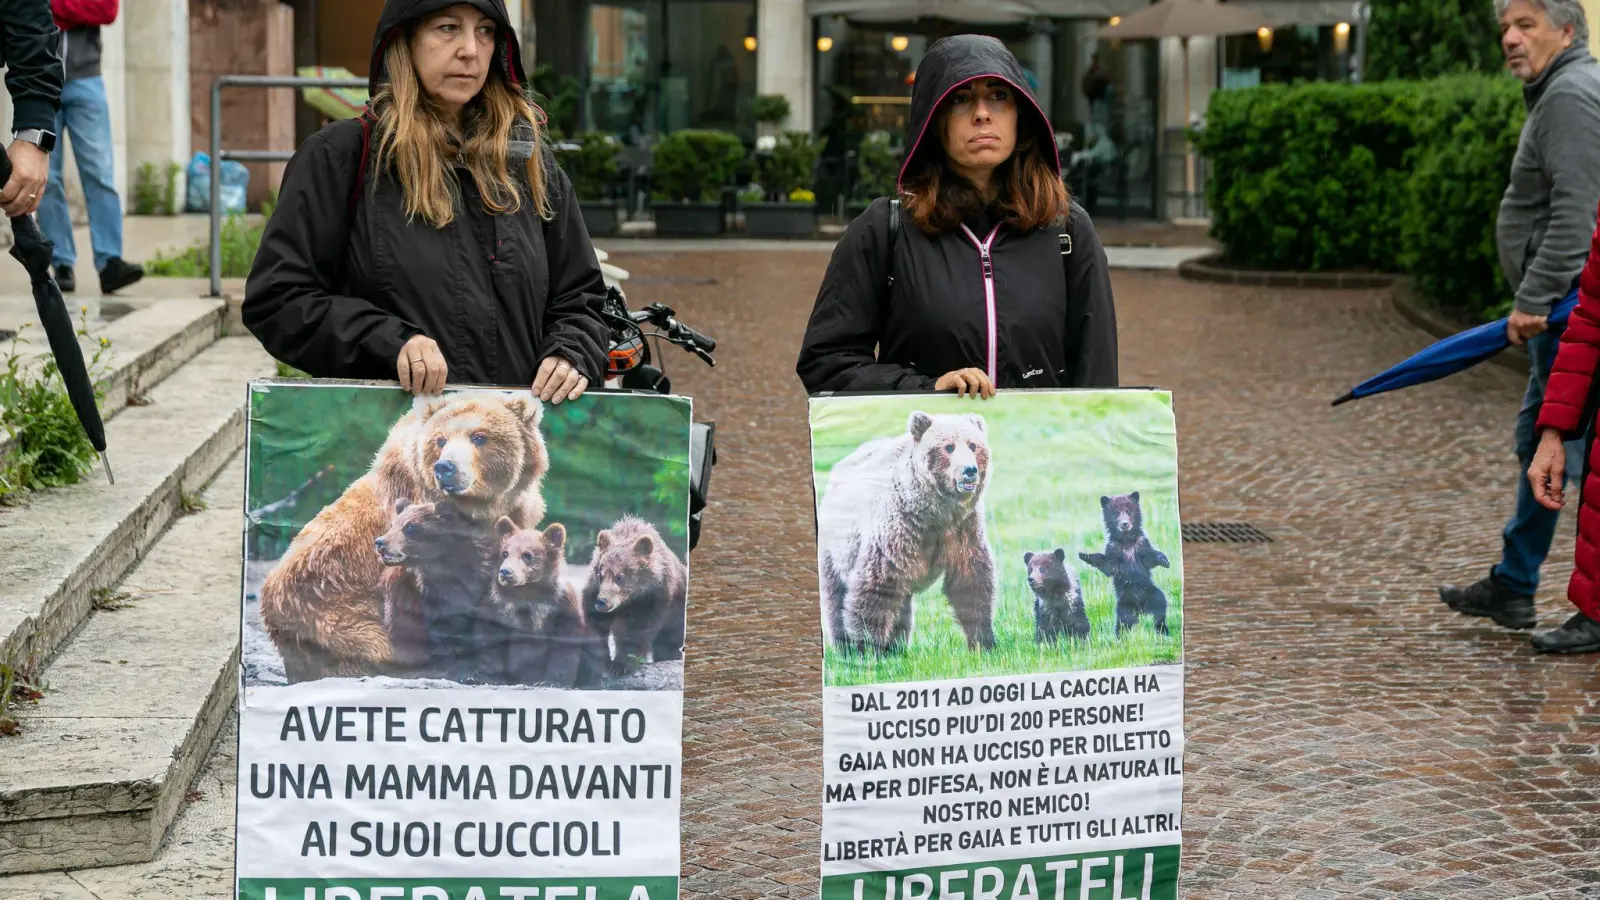 Umweltschützerinnen demonstrieren für die Befreiung der Bärin JJ4. (Foto: Enrico Pretto/LaPresse via ZUMA Press/dpa)